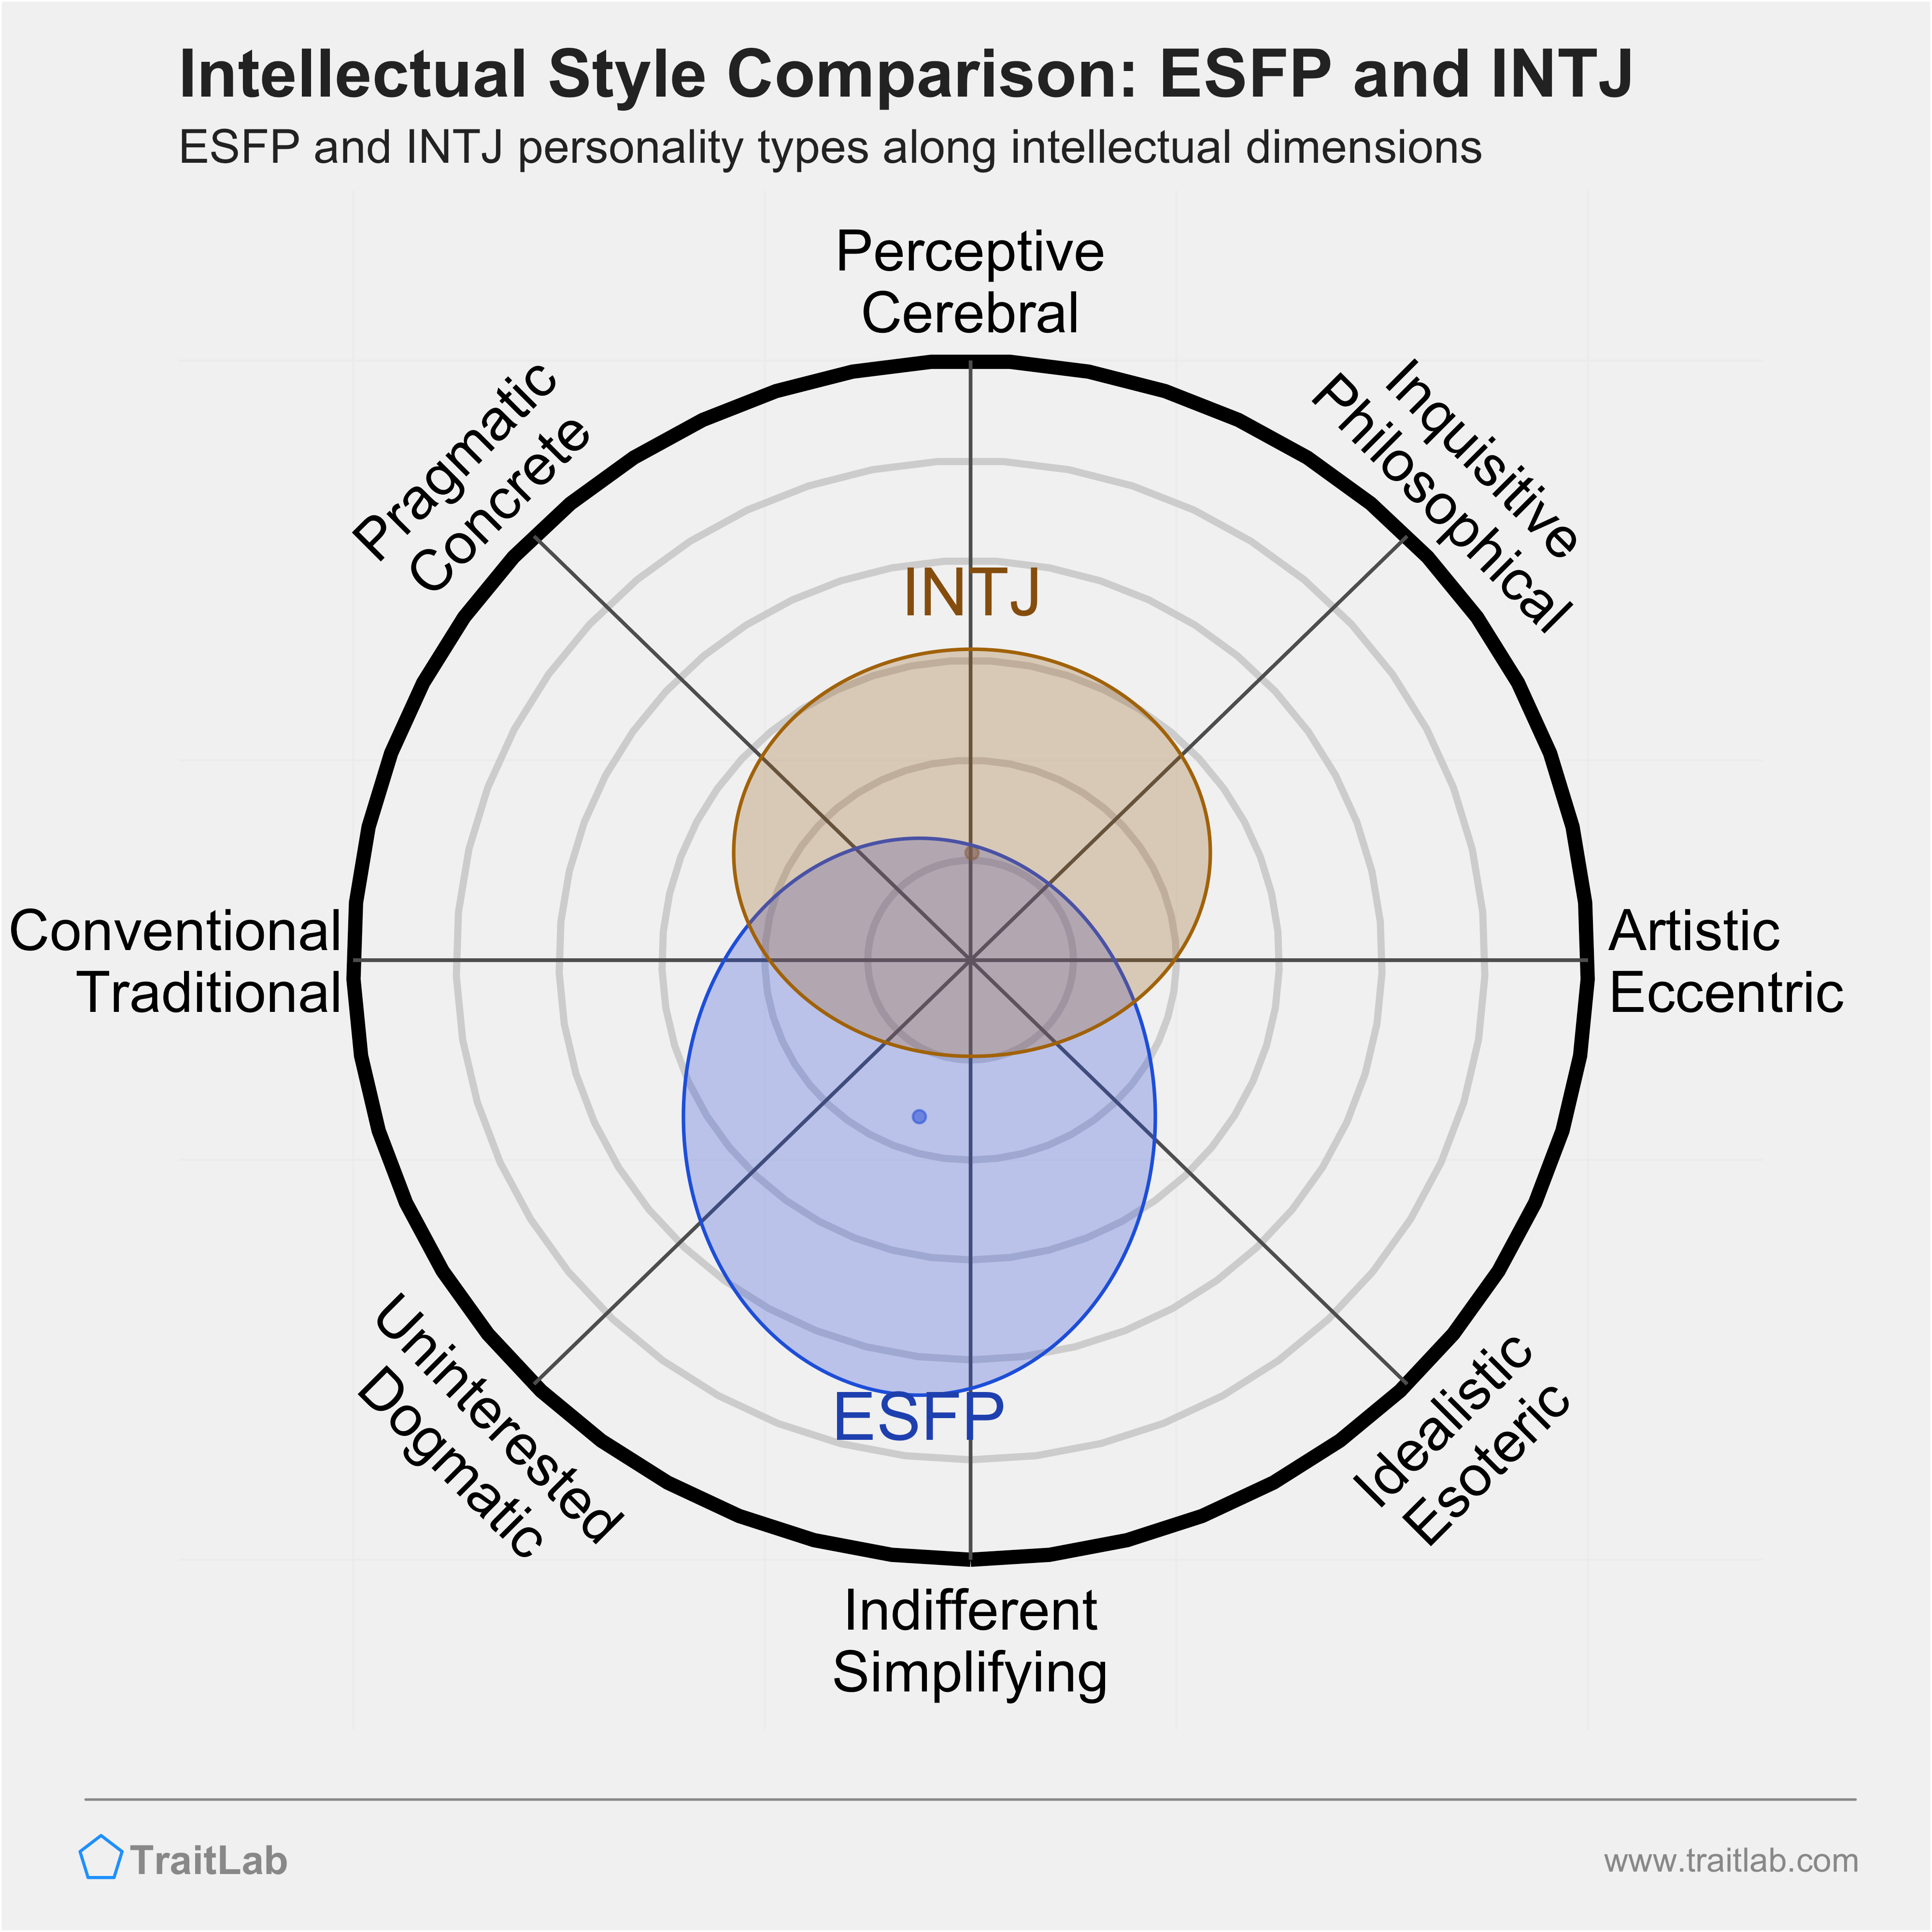 ESFP and INTJ comparison across intellectual dimensions